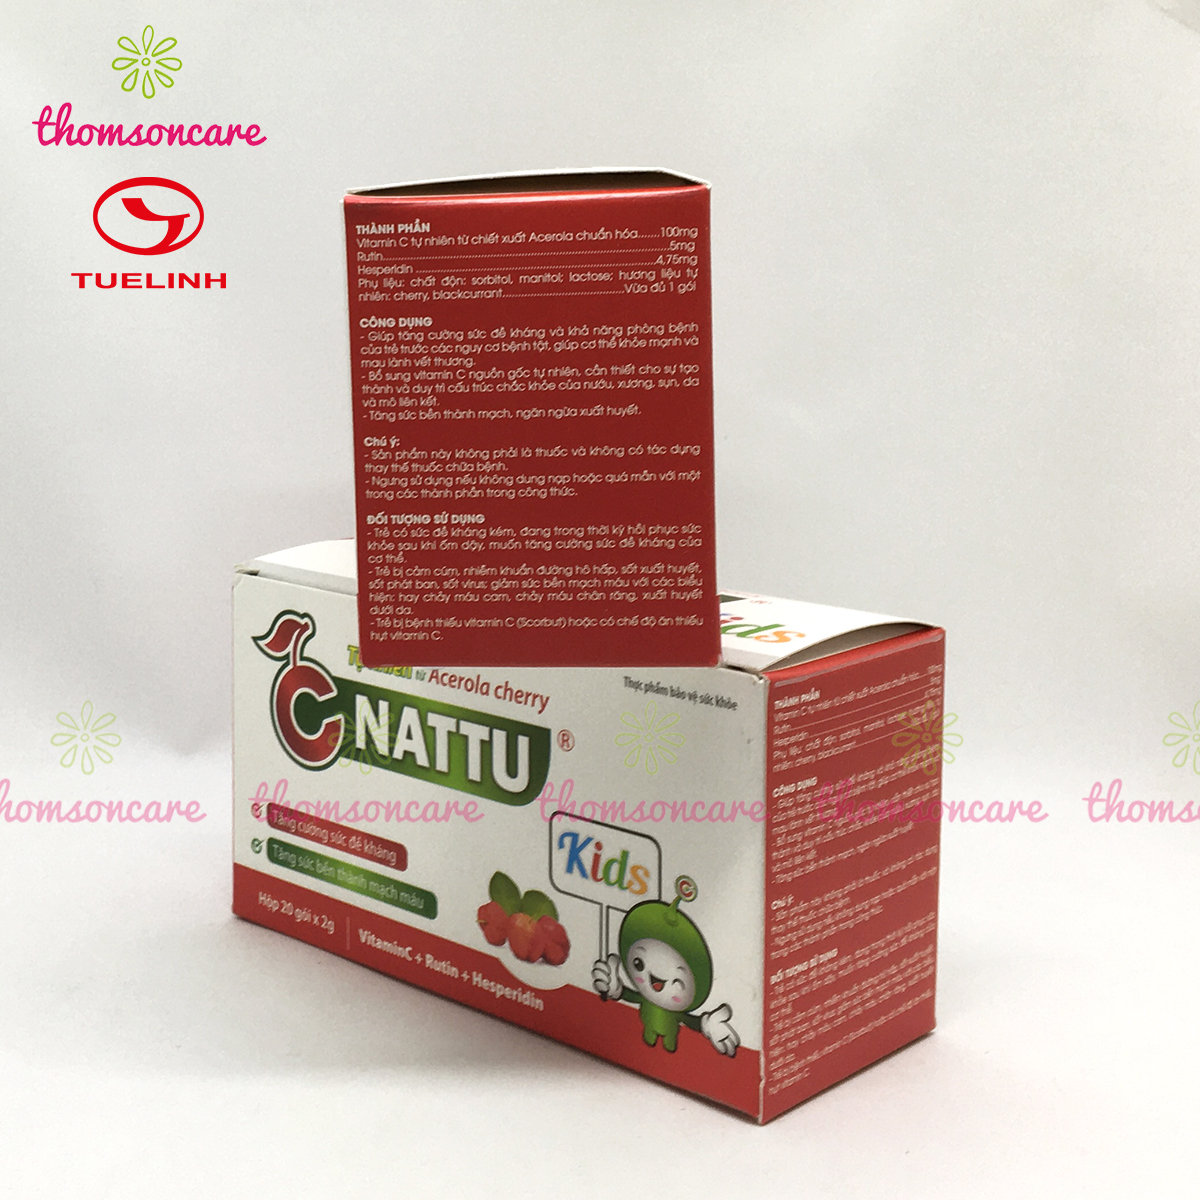 C Nattu Kids - Bổ sung vitaminC, tăng sức đề kháng, giảm chảy máu cam cho bé - Của dược Tuệ Linh,